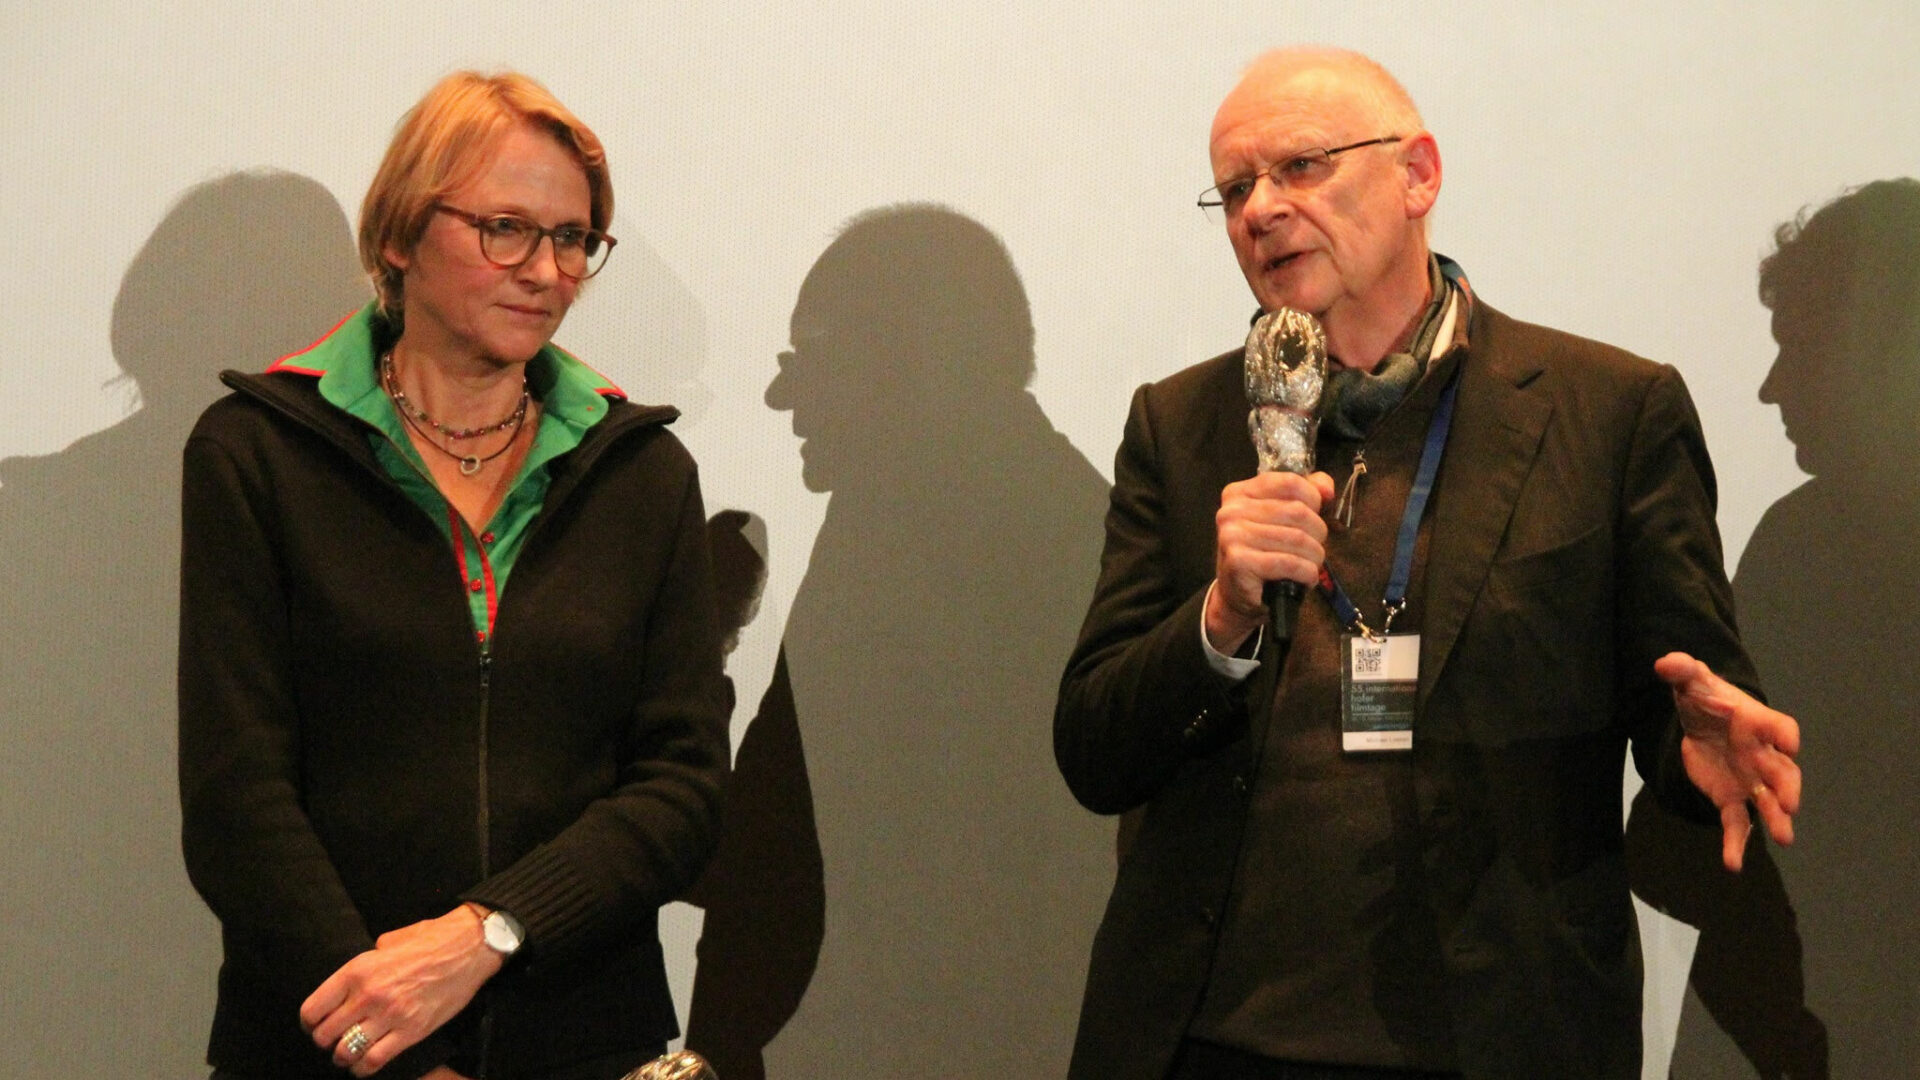 HoF 2021: Ulrike Franke and Michael Loeken present WE ARE ALL DETROIT.